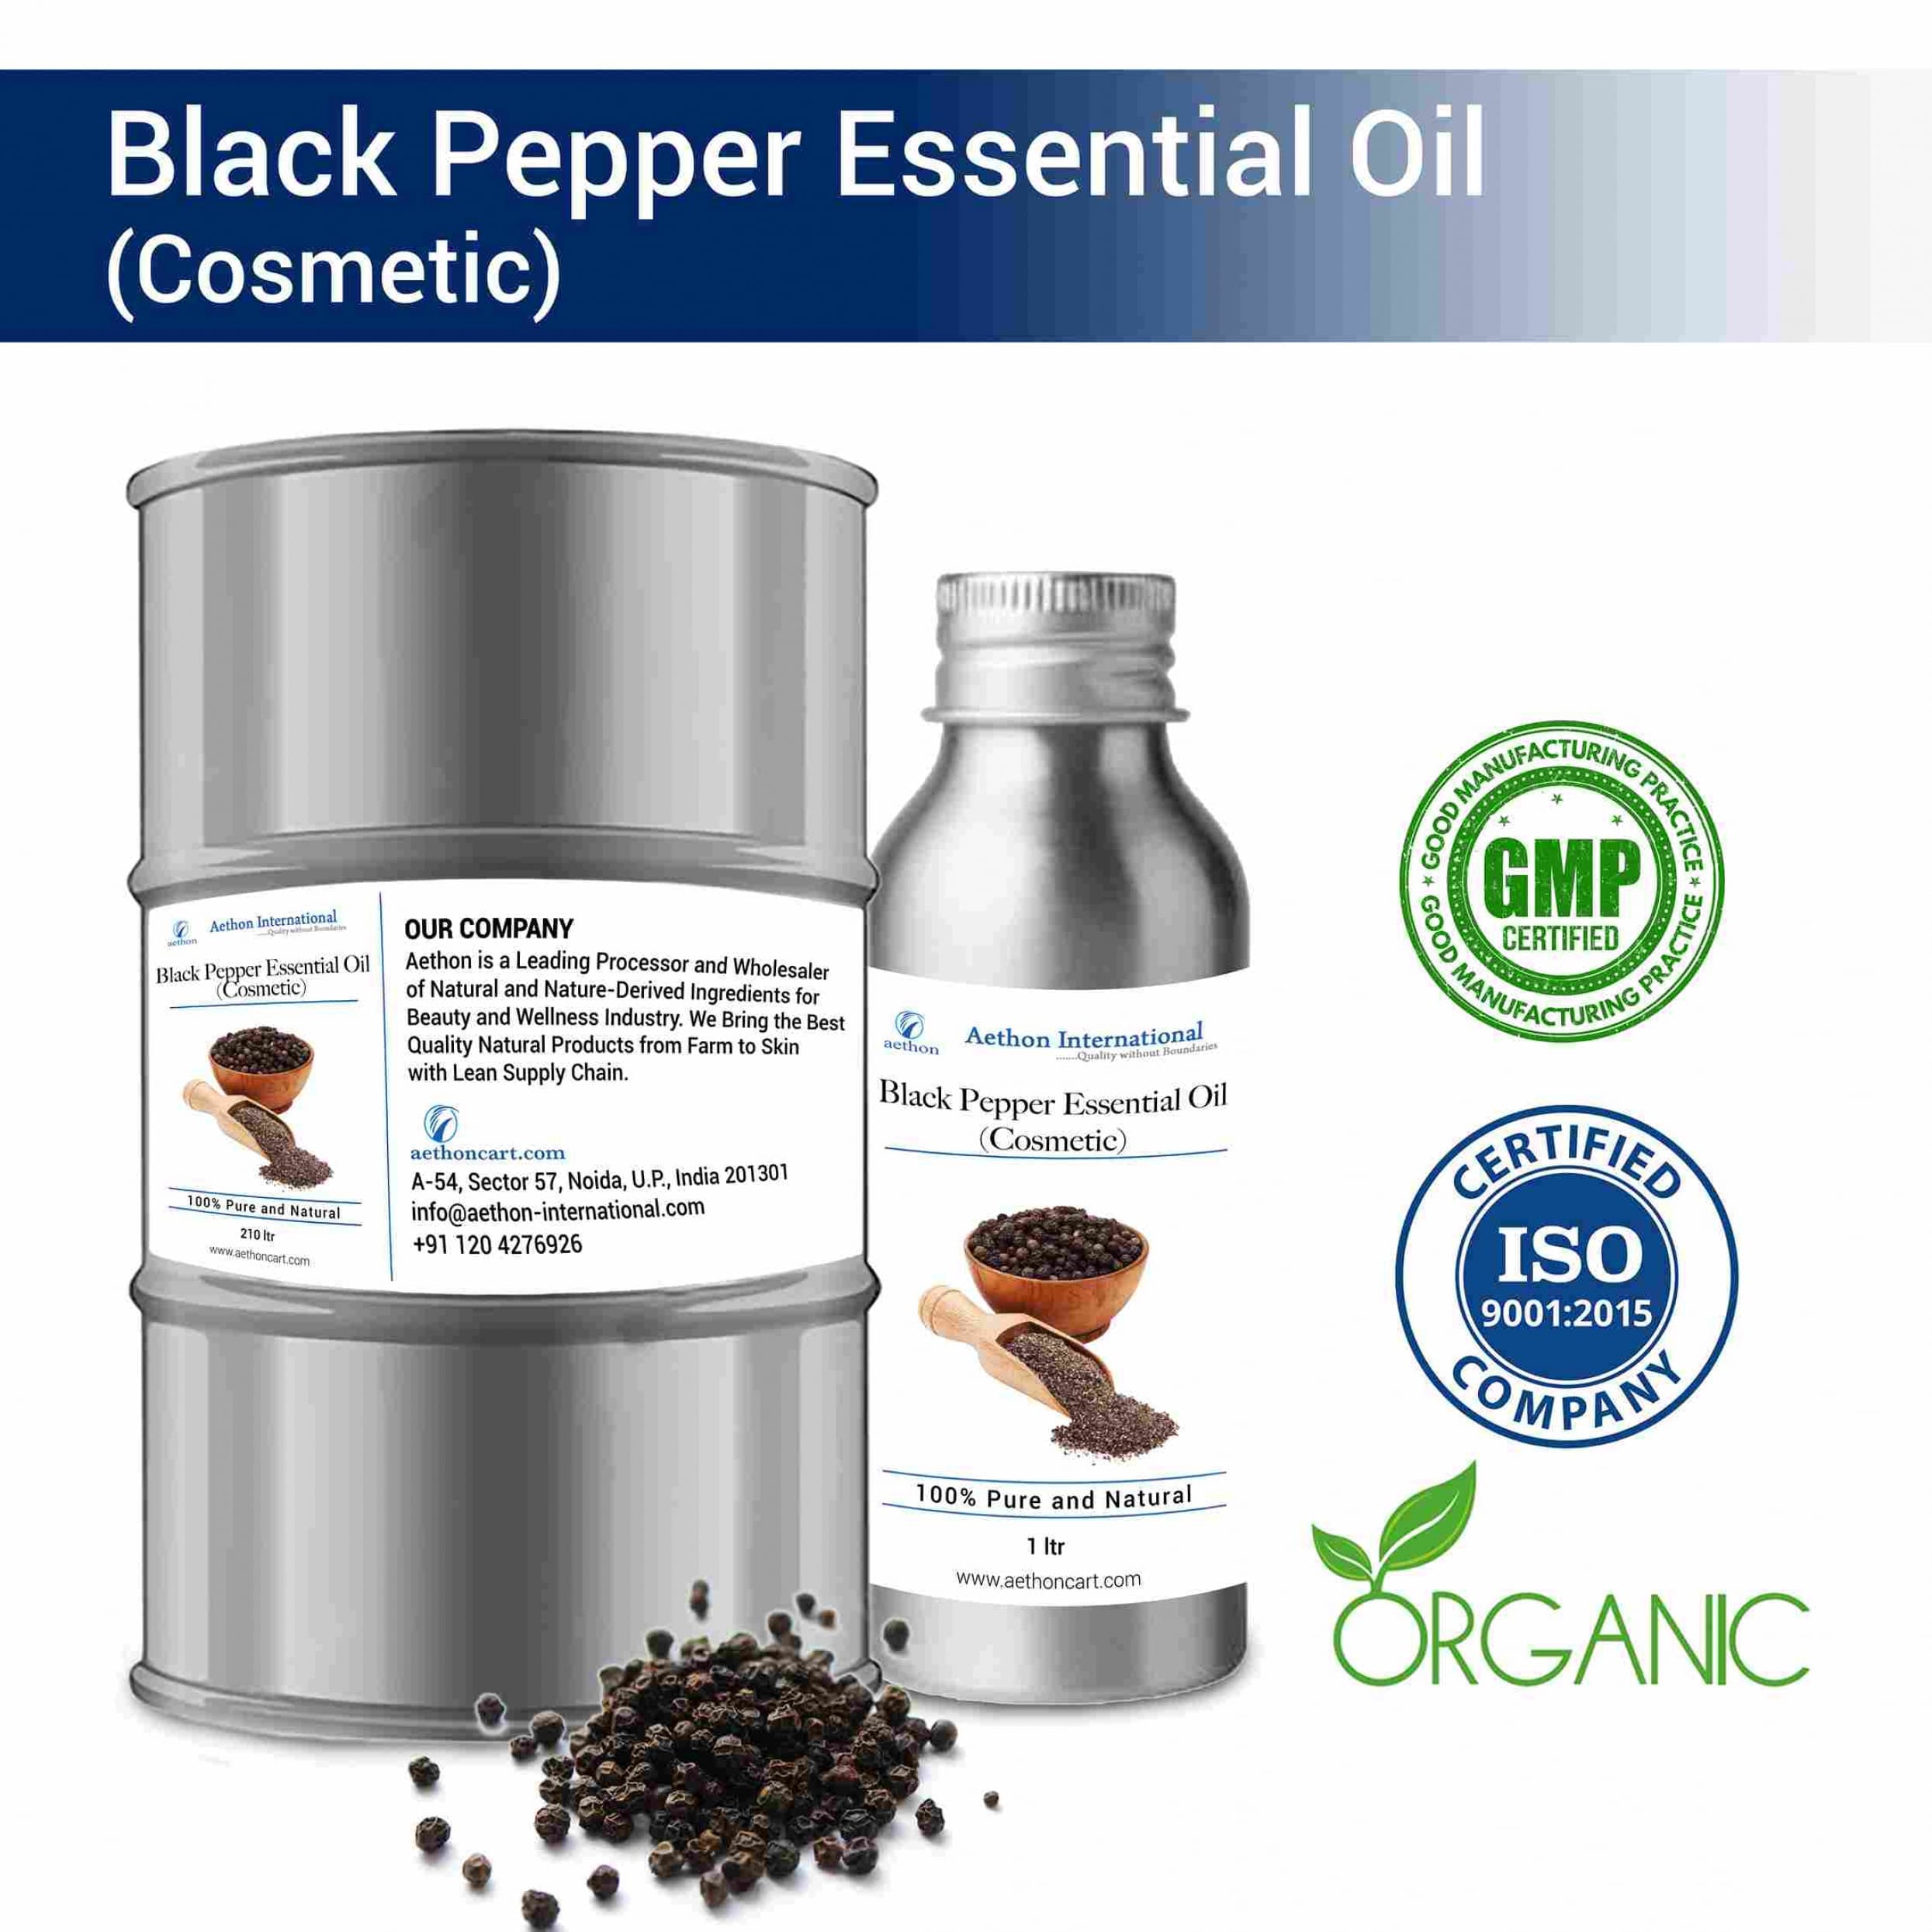 Black Pepper Essential Oil (Cosmetic)